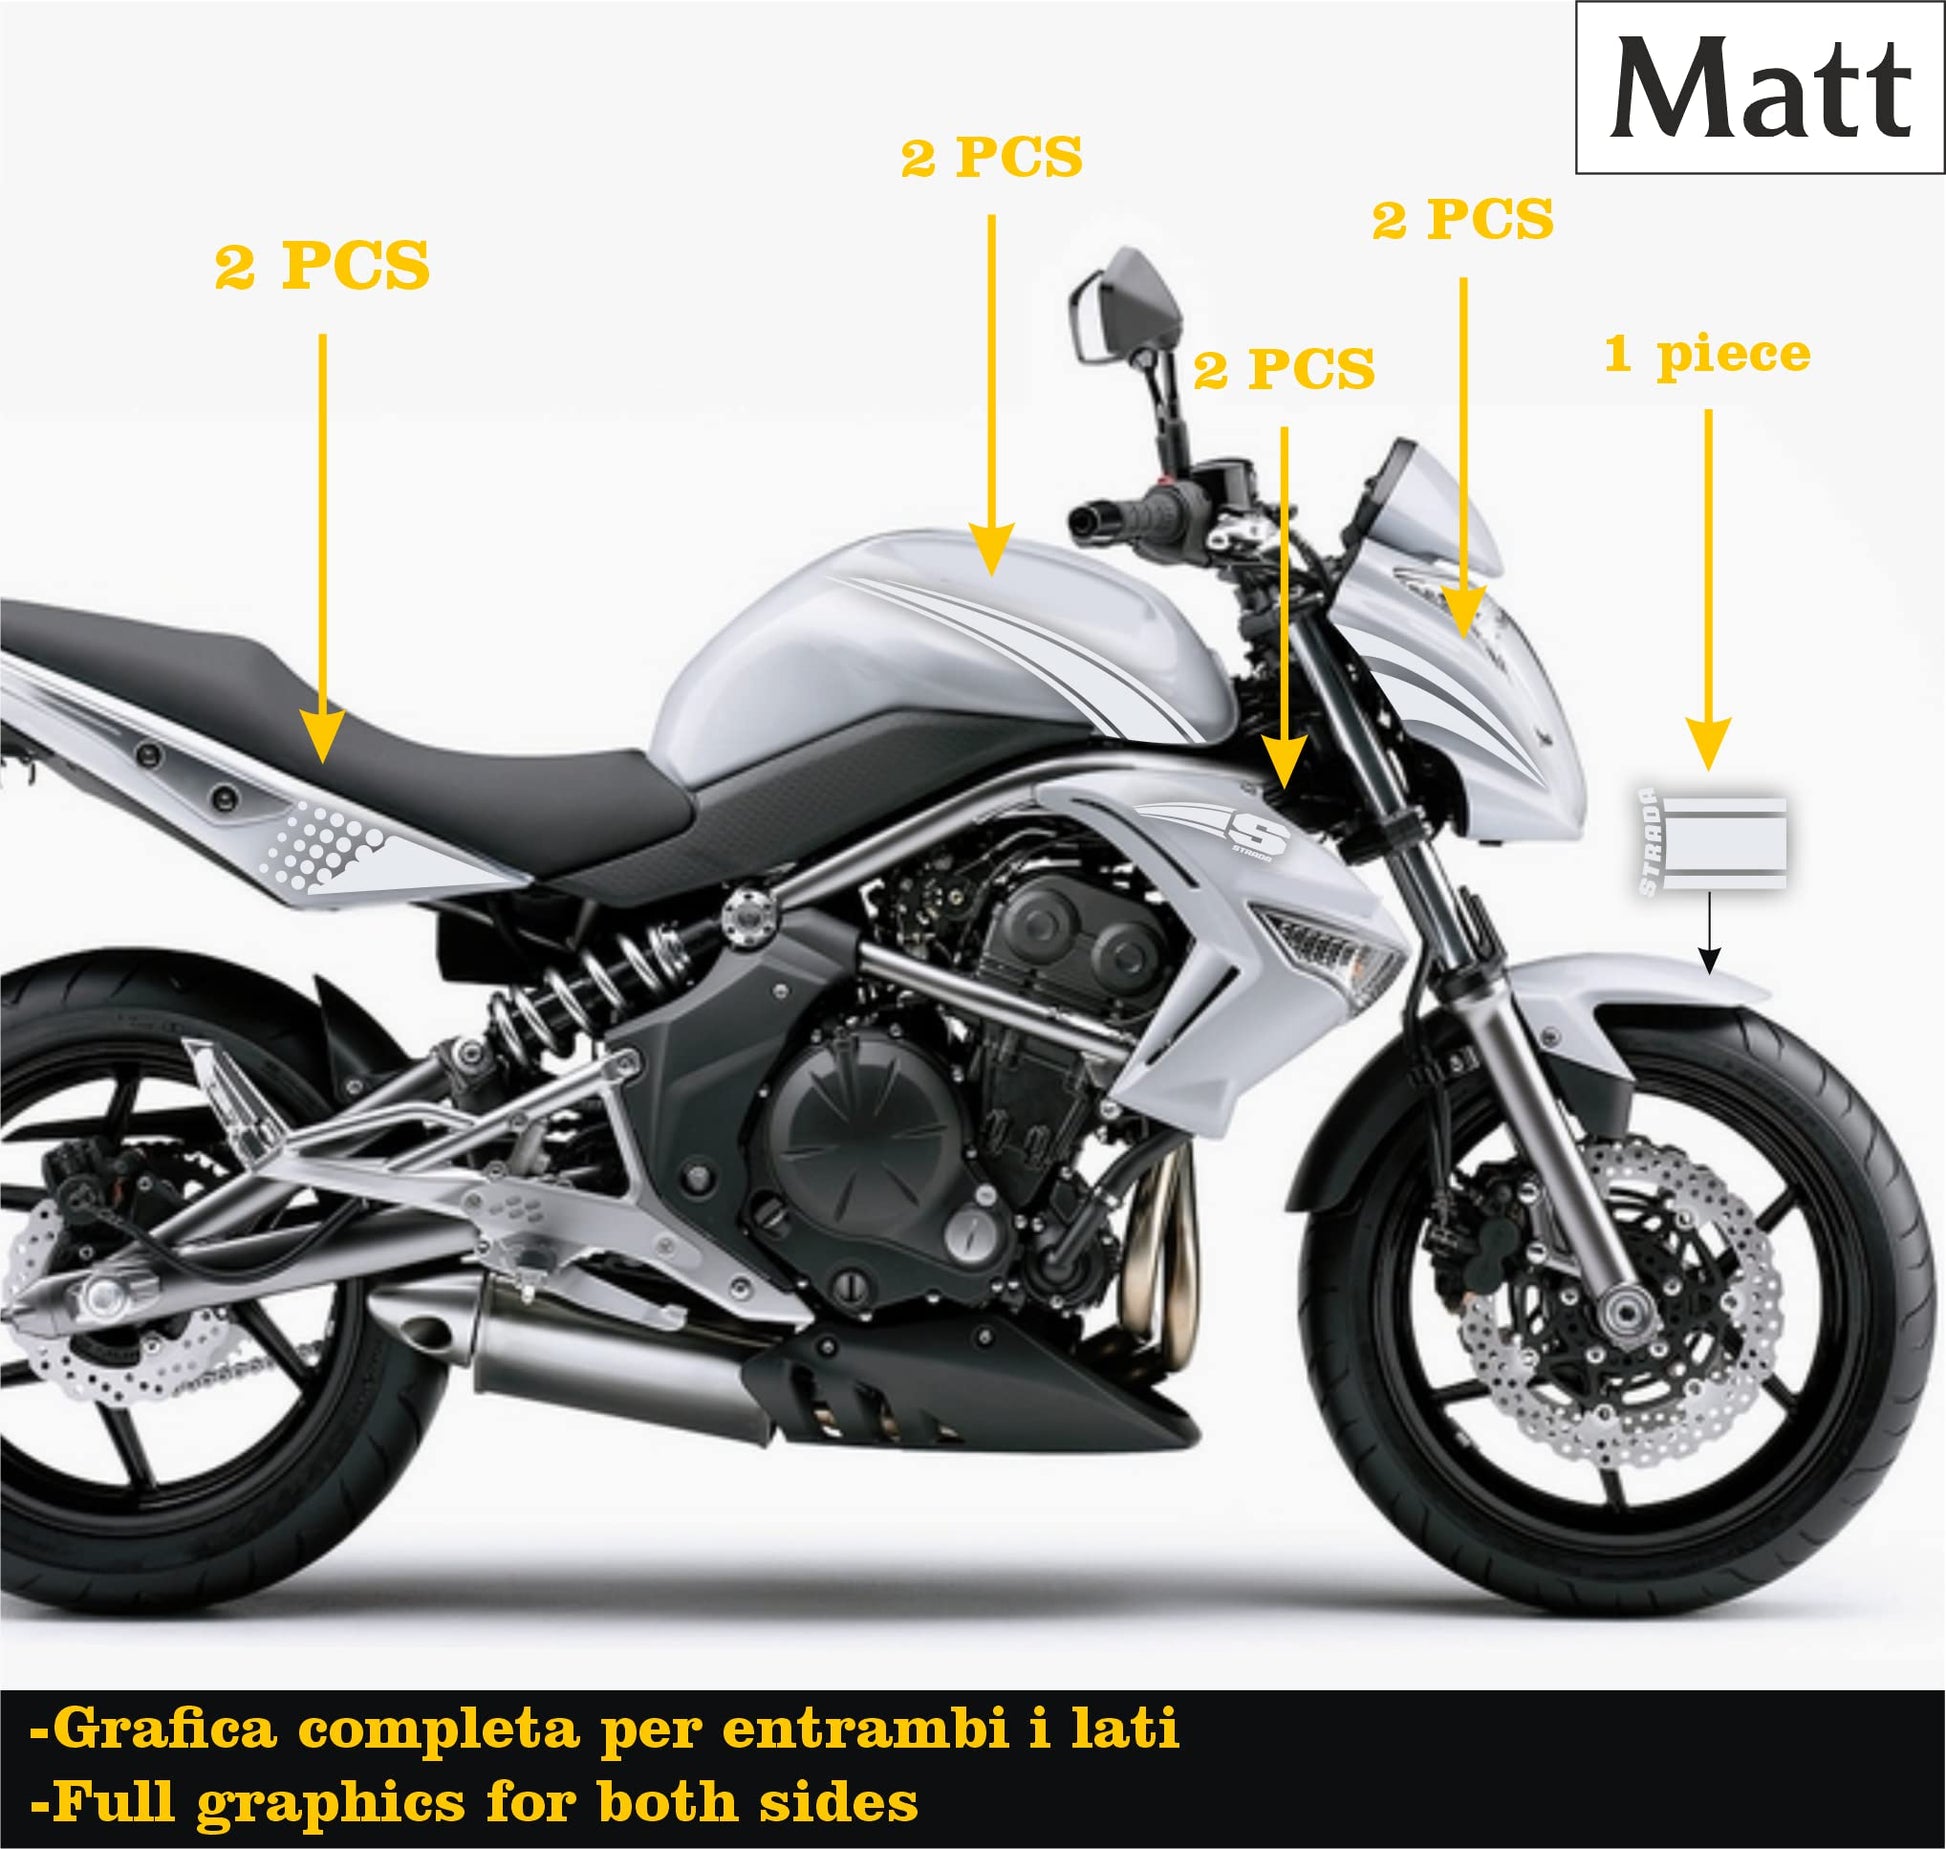 DualColorStampe Adesivi Compatibili con Kawasaki ER-6N (2009-20011) serbatoio DX-SX stickers Moto Motorbike COD.M0147 a €39.99 solo da DualColorStampe